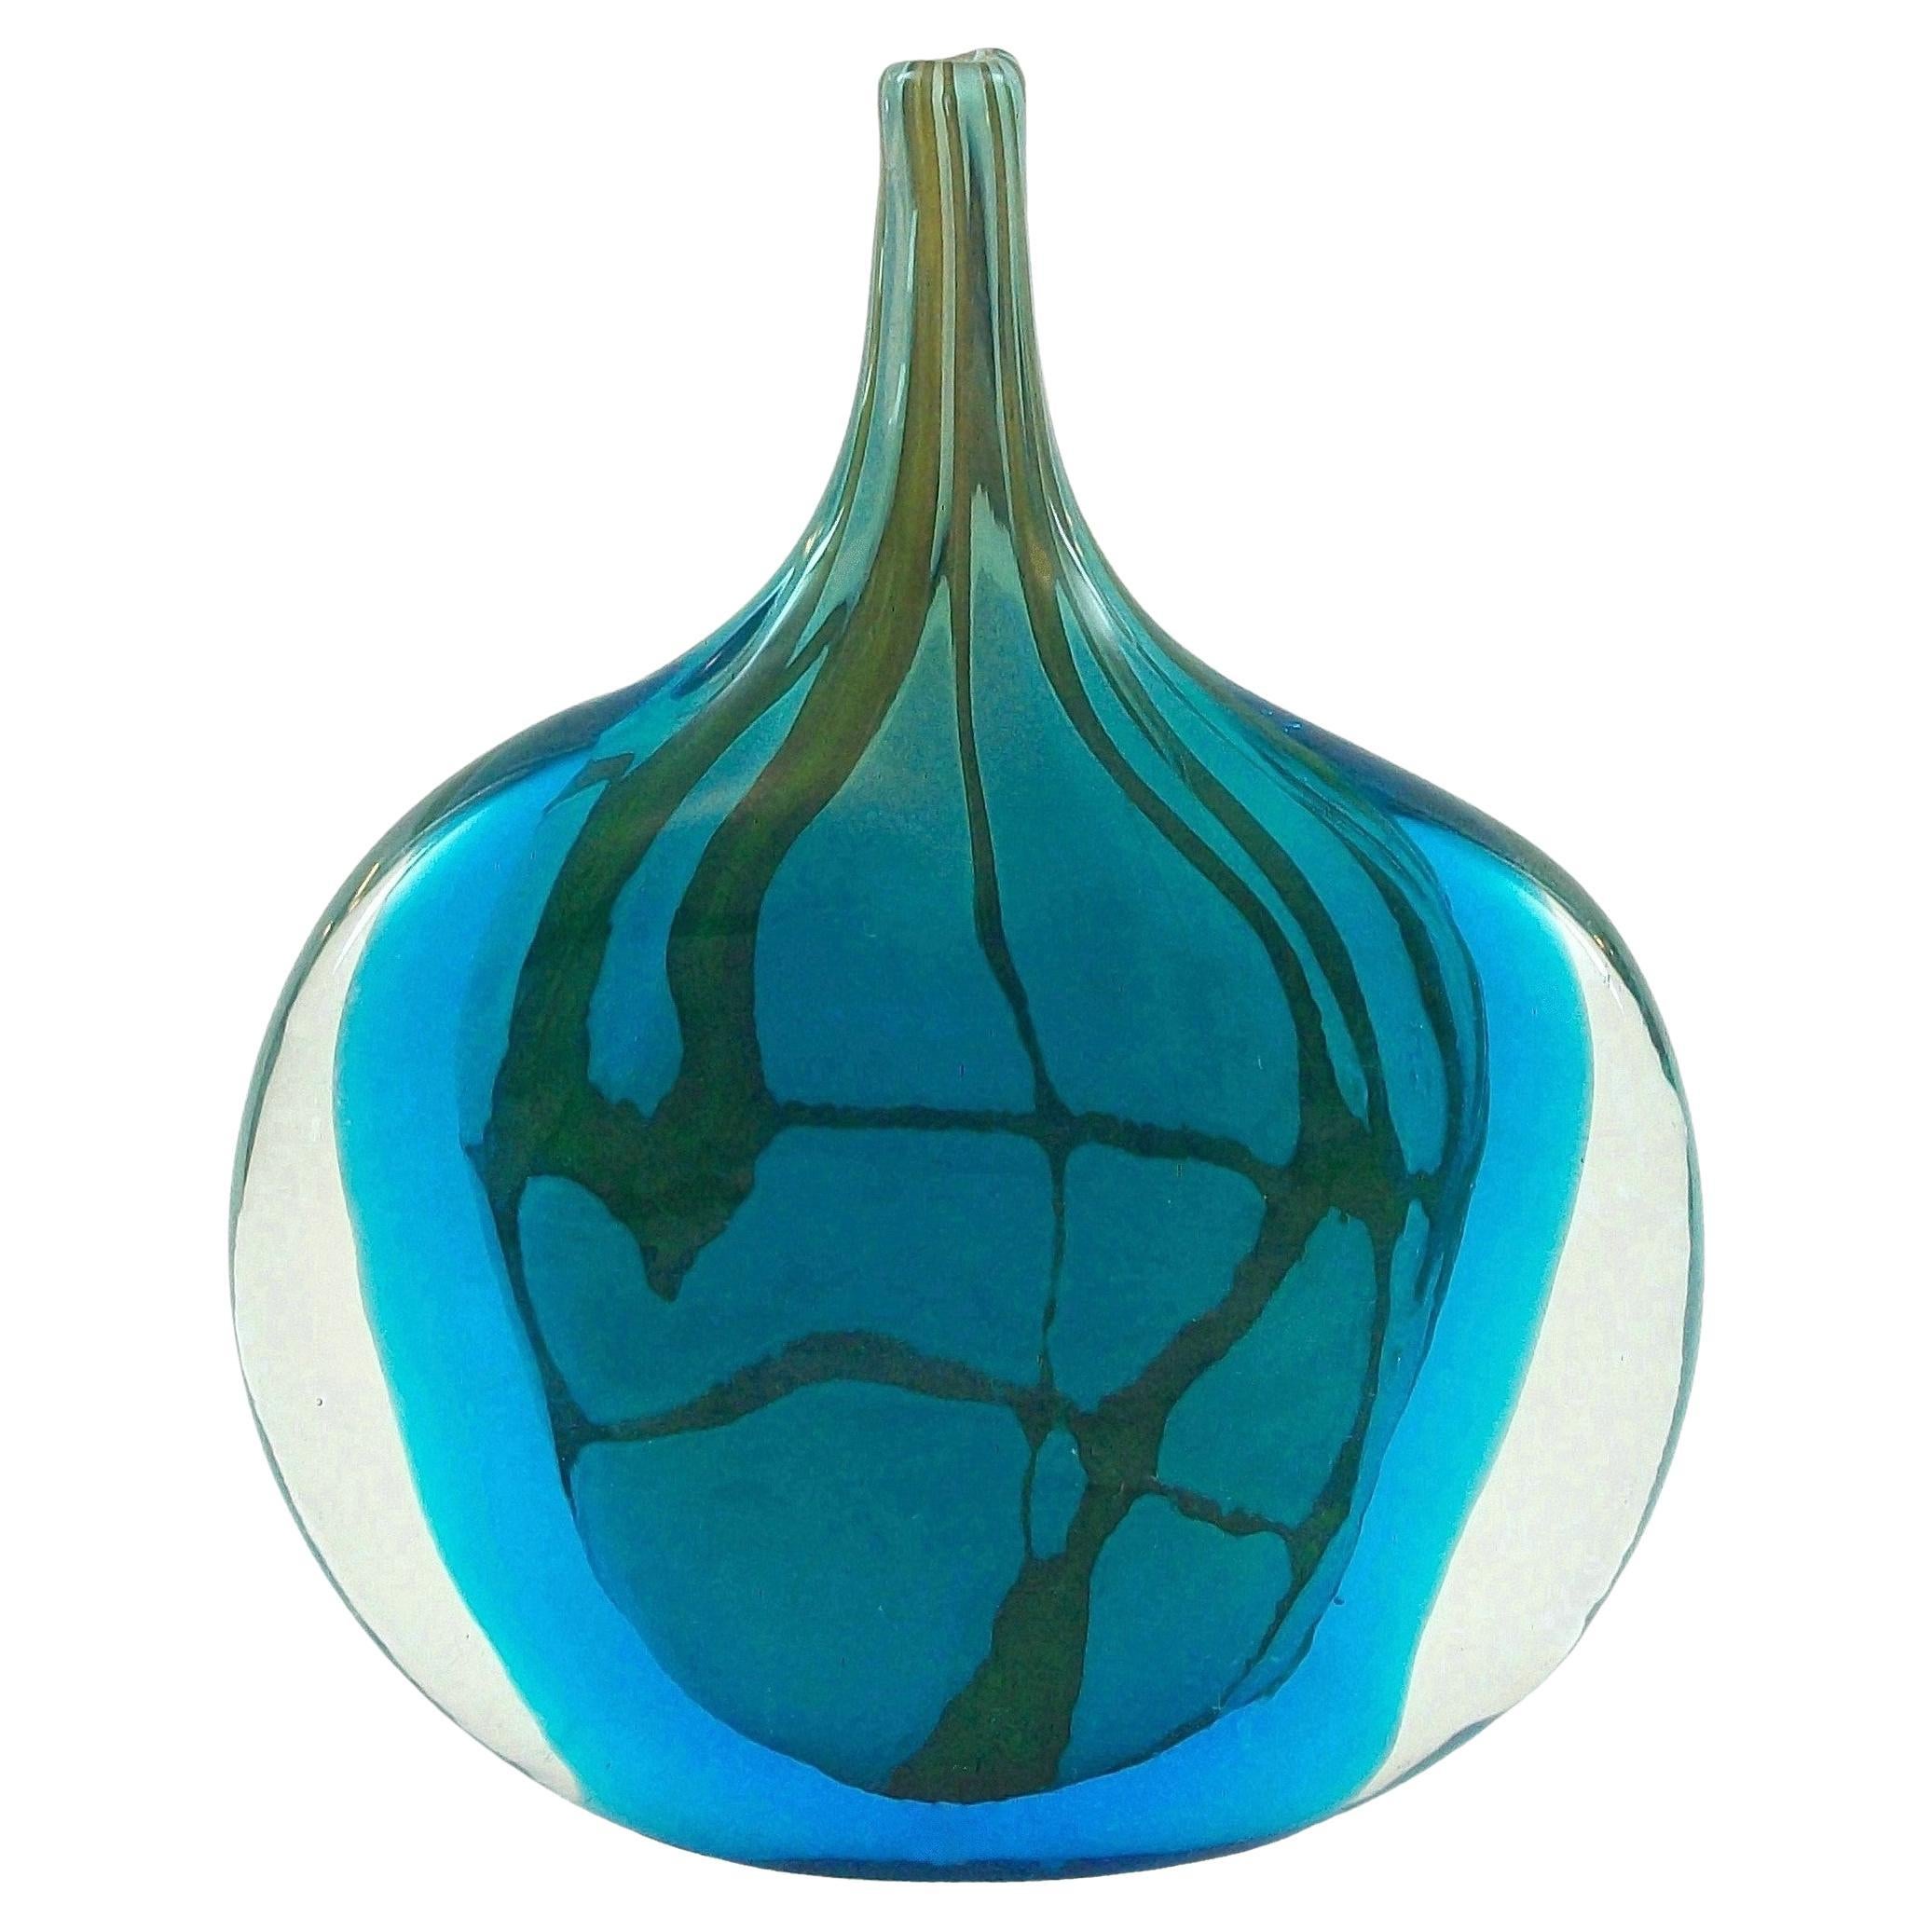 MDINA - MICHAEL HARRIS - Vase en verre représentant des poissons - Non signé - Malte - vers 1970